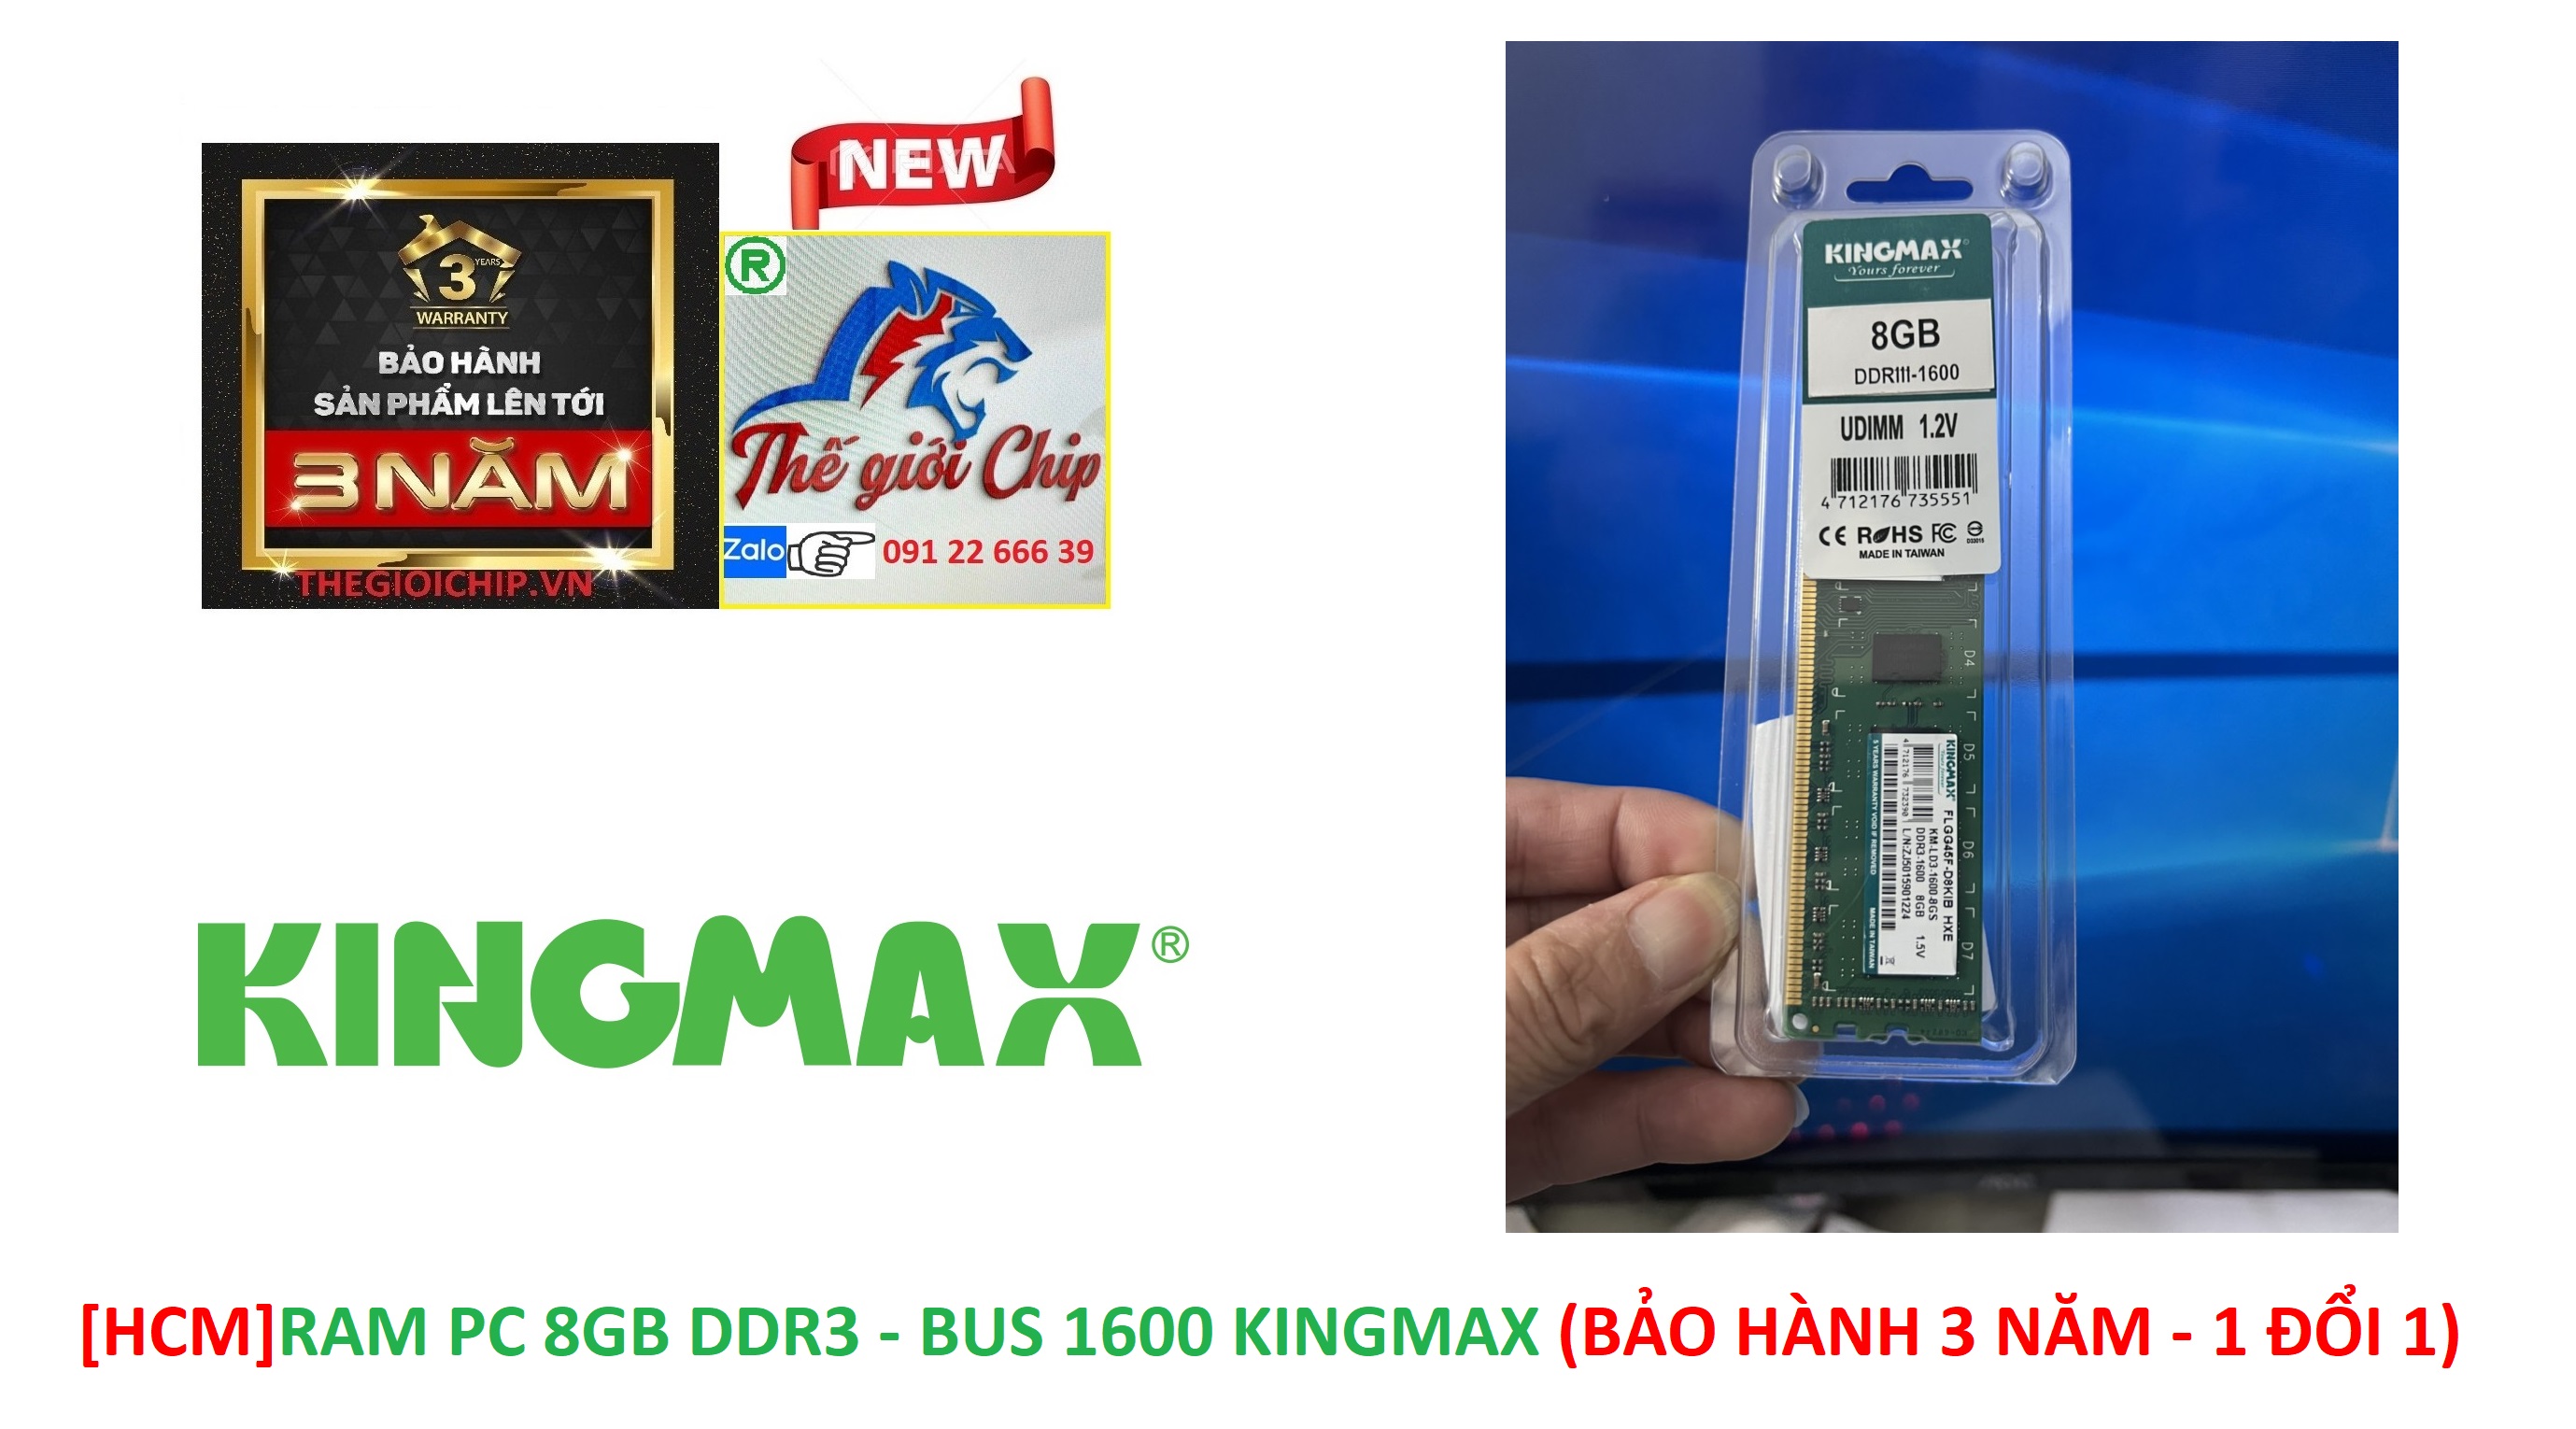 HCMRAM PC 8GB DDR3 - BUS 1600 KINGMAX BẢO HÀNH 3 NĂM - 1 ĐỔI 1